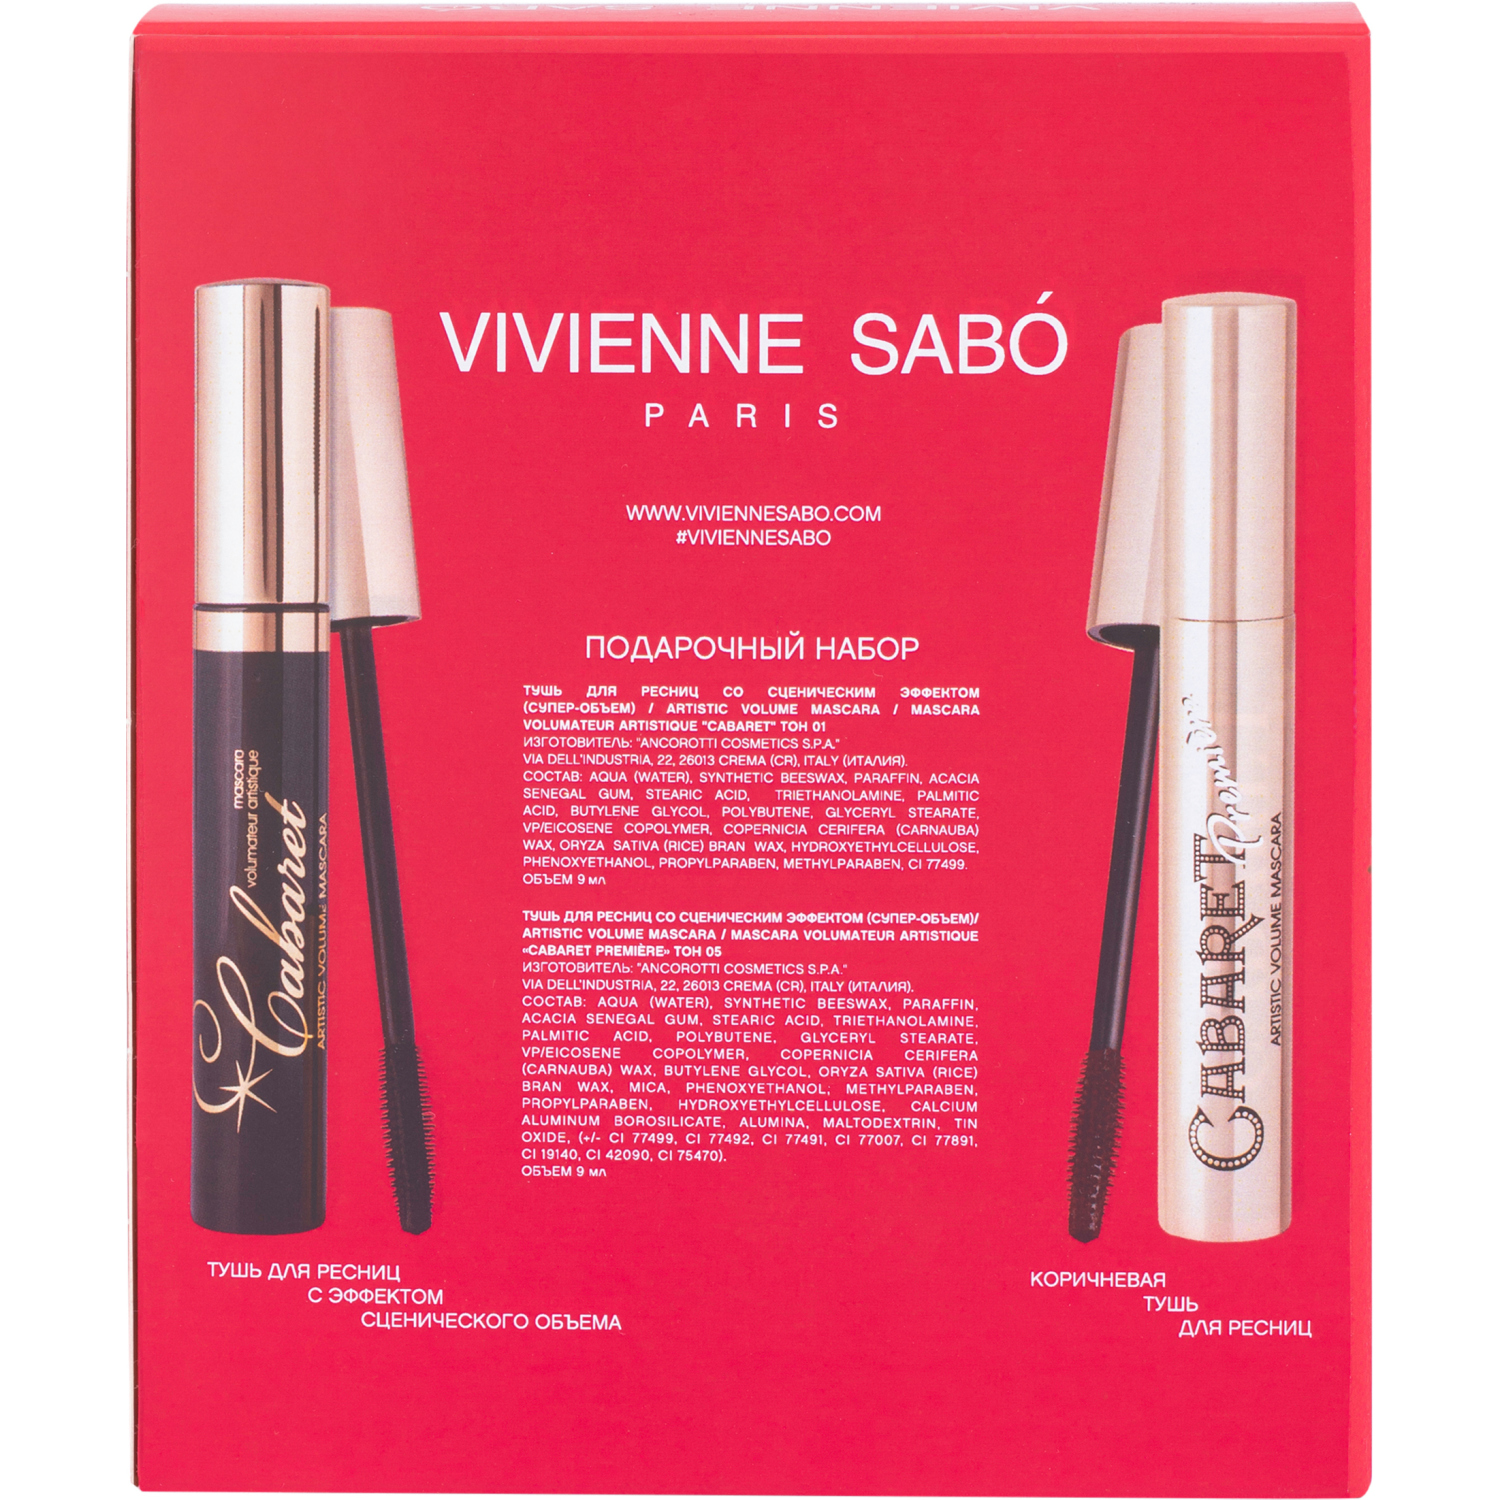 Подарочный набор Vivienne Sabo Тушь для объёма 2 шт Cabaret тон 01 и Cabaret Premiere тон 05 - фото 2